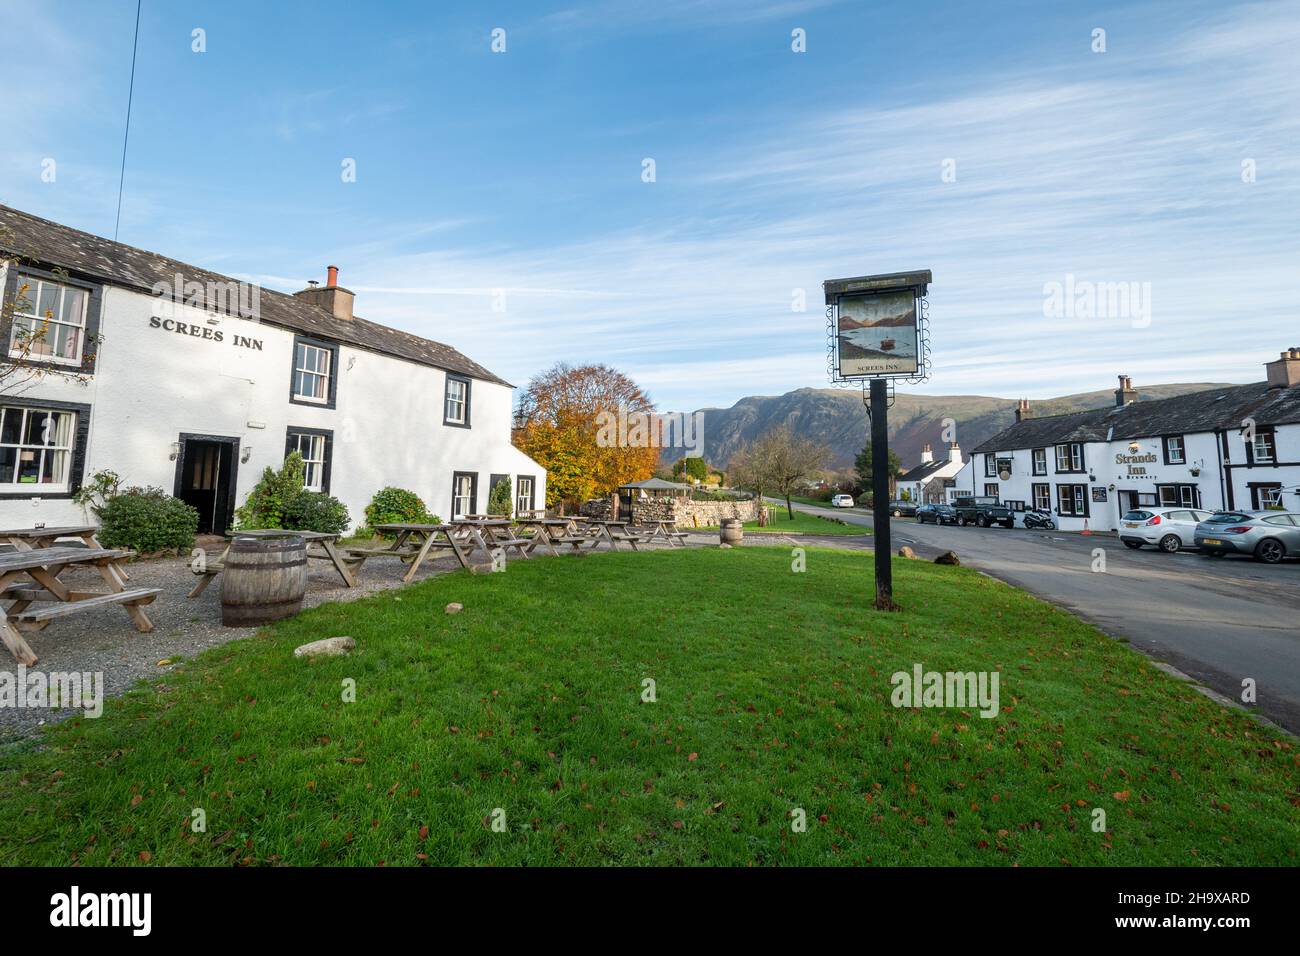 The Screes Inn à Nether Wasdale, Seascale, Cumbria.Un pub et un hôtel dans le parc national de Lake District, en novembre ou en automne, au Royaume-Uni Banque D'Images